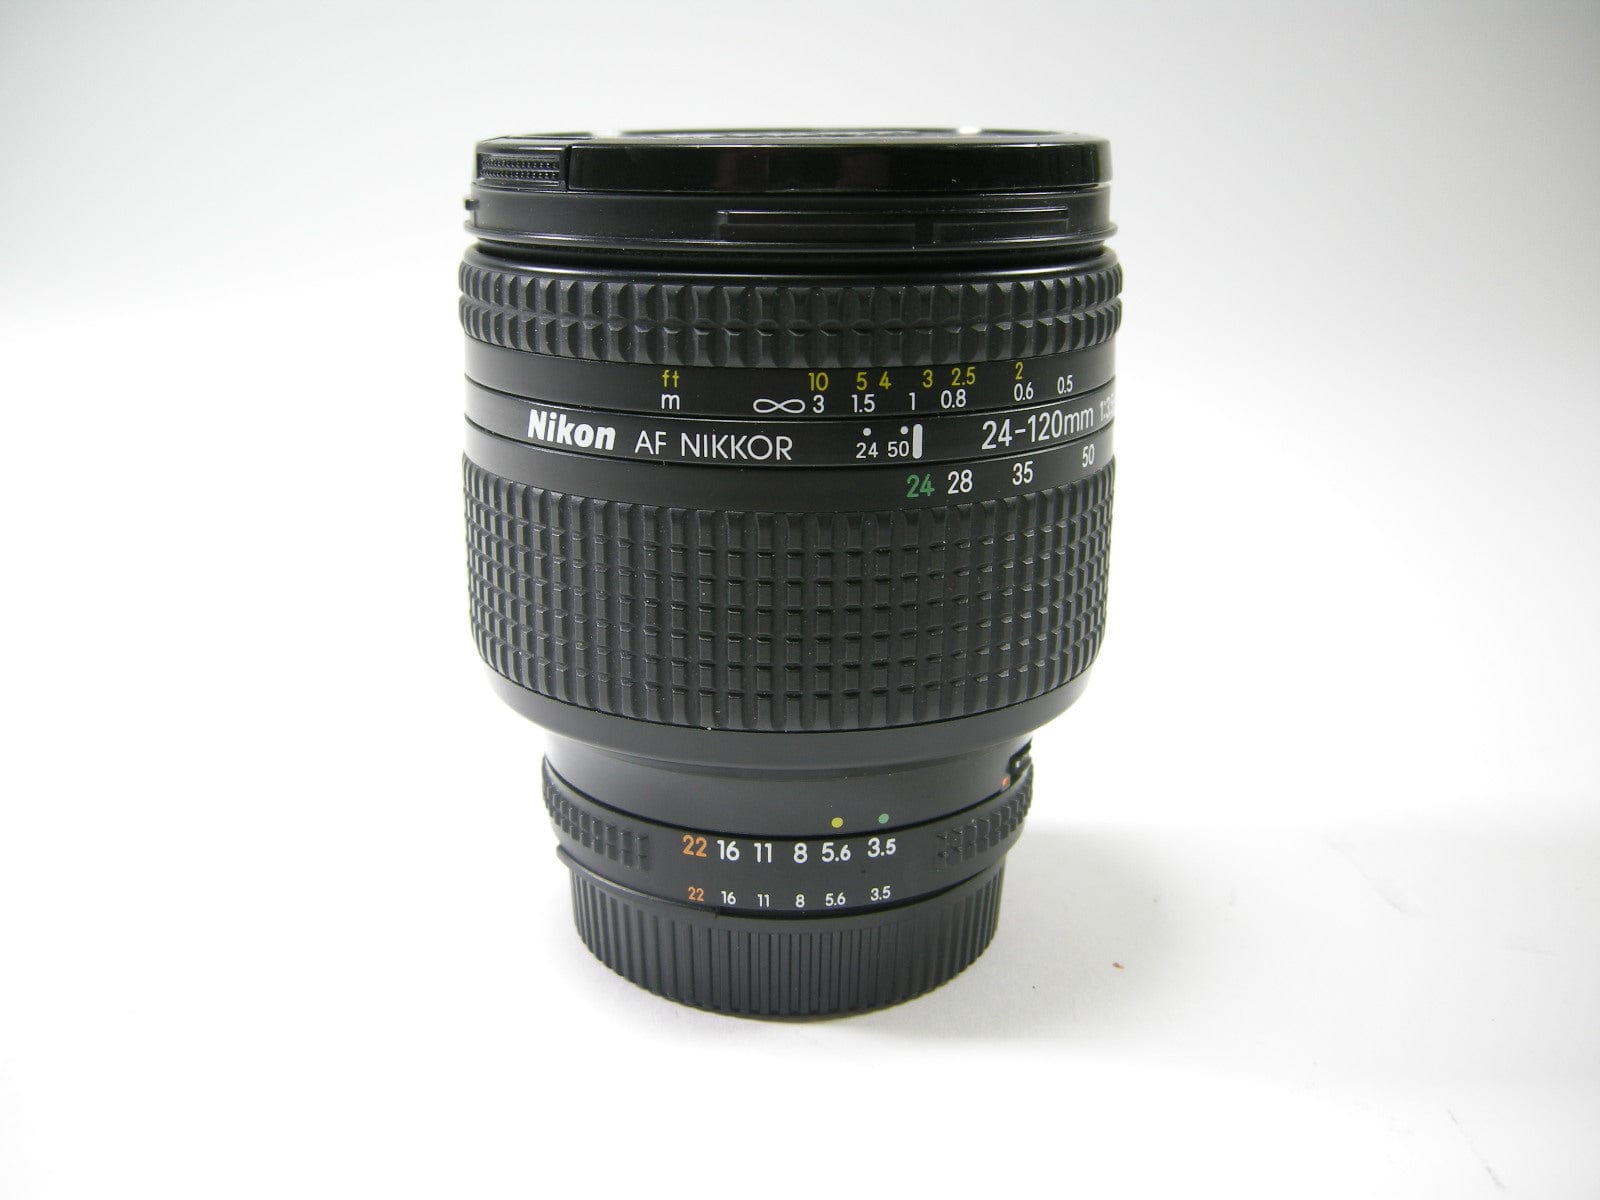 Nikon AF Nikkor 24-120mm f3.5-5.6D